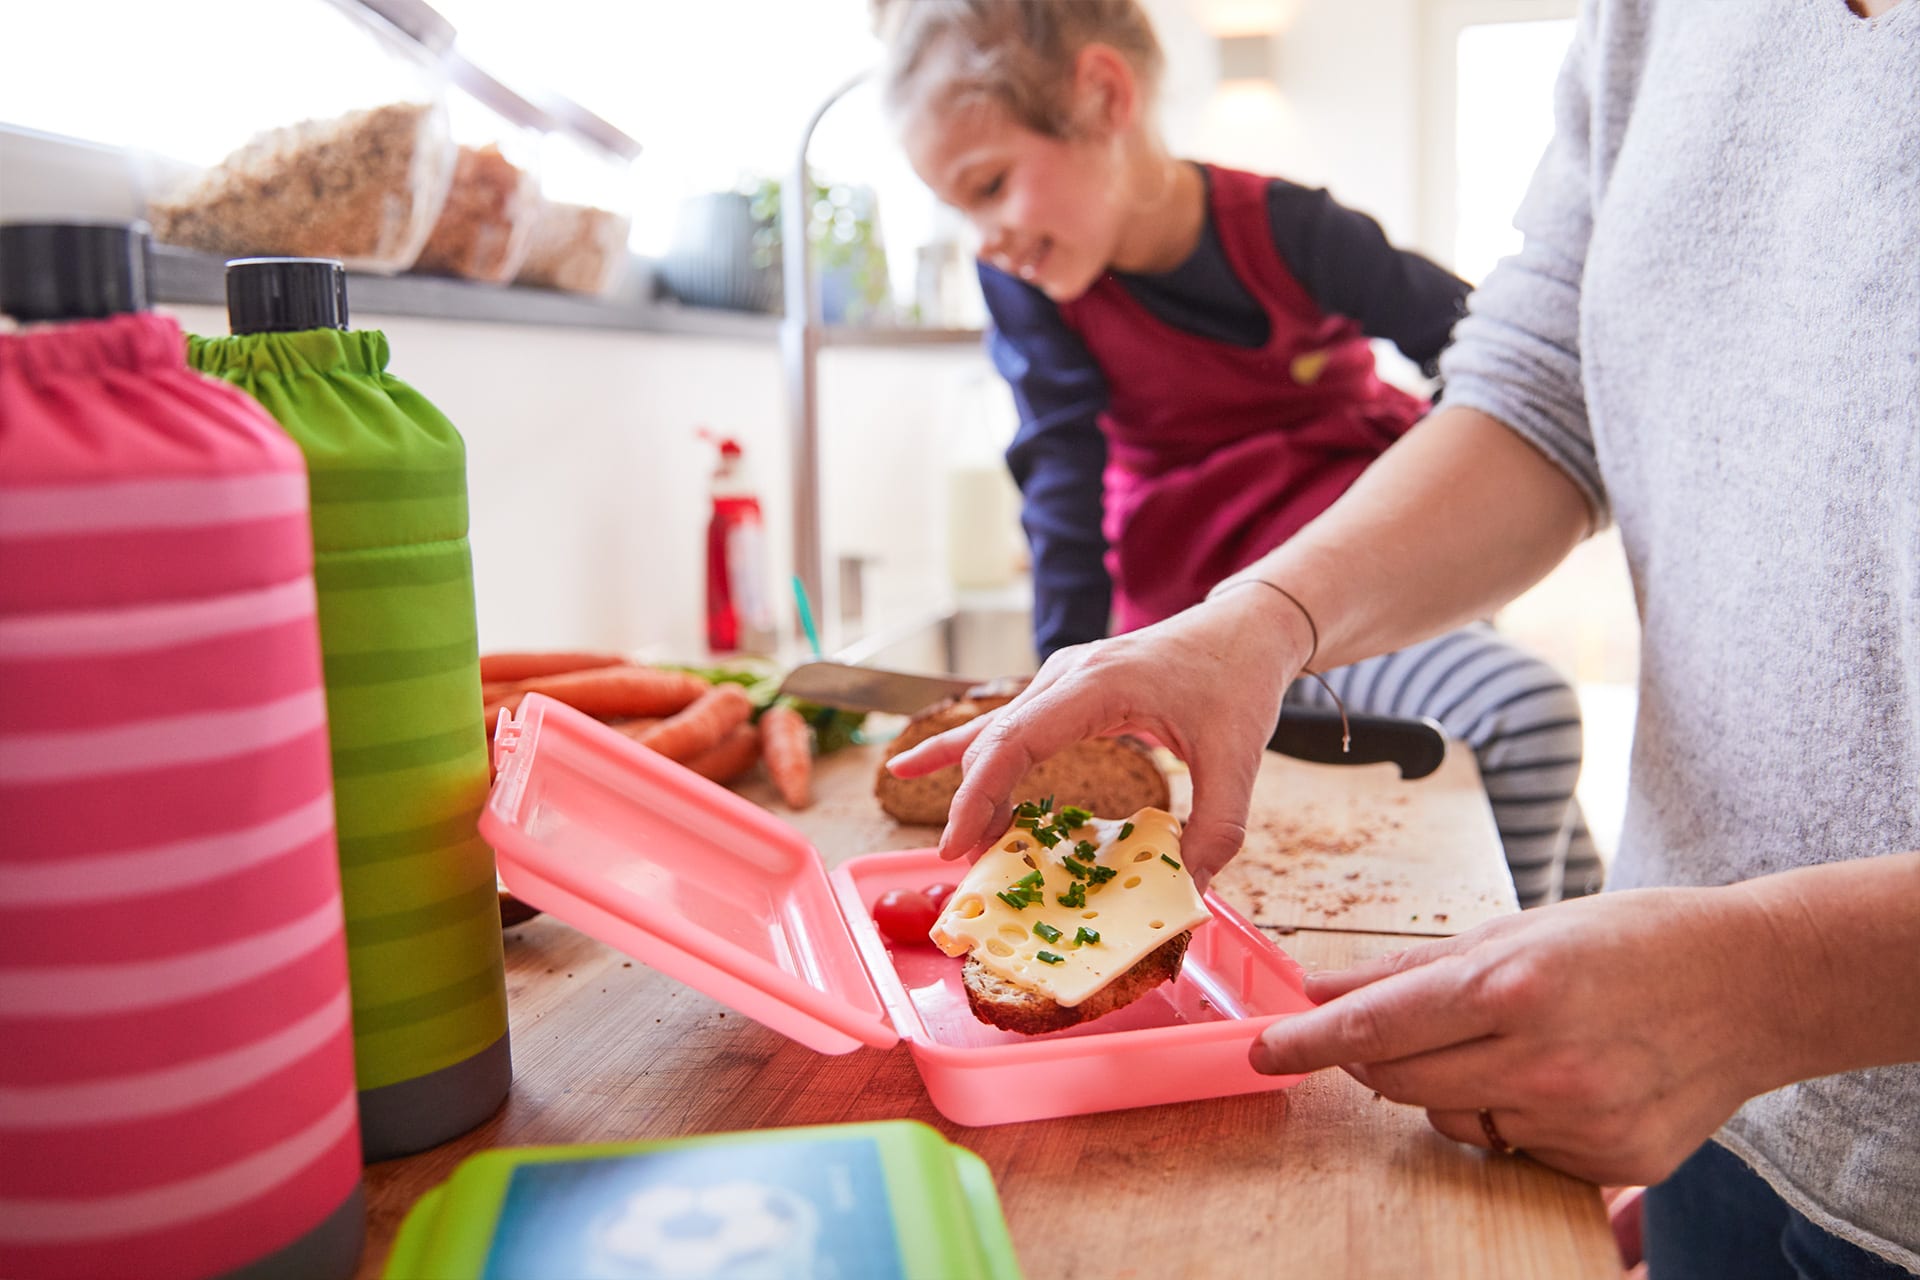  Ideen für Pausenbrote | rote Brotdose geöffnet und Kind nimmt sich Käsebrot